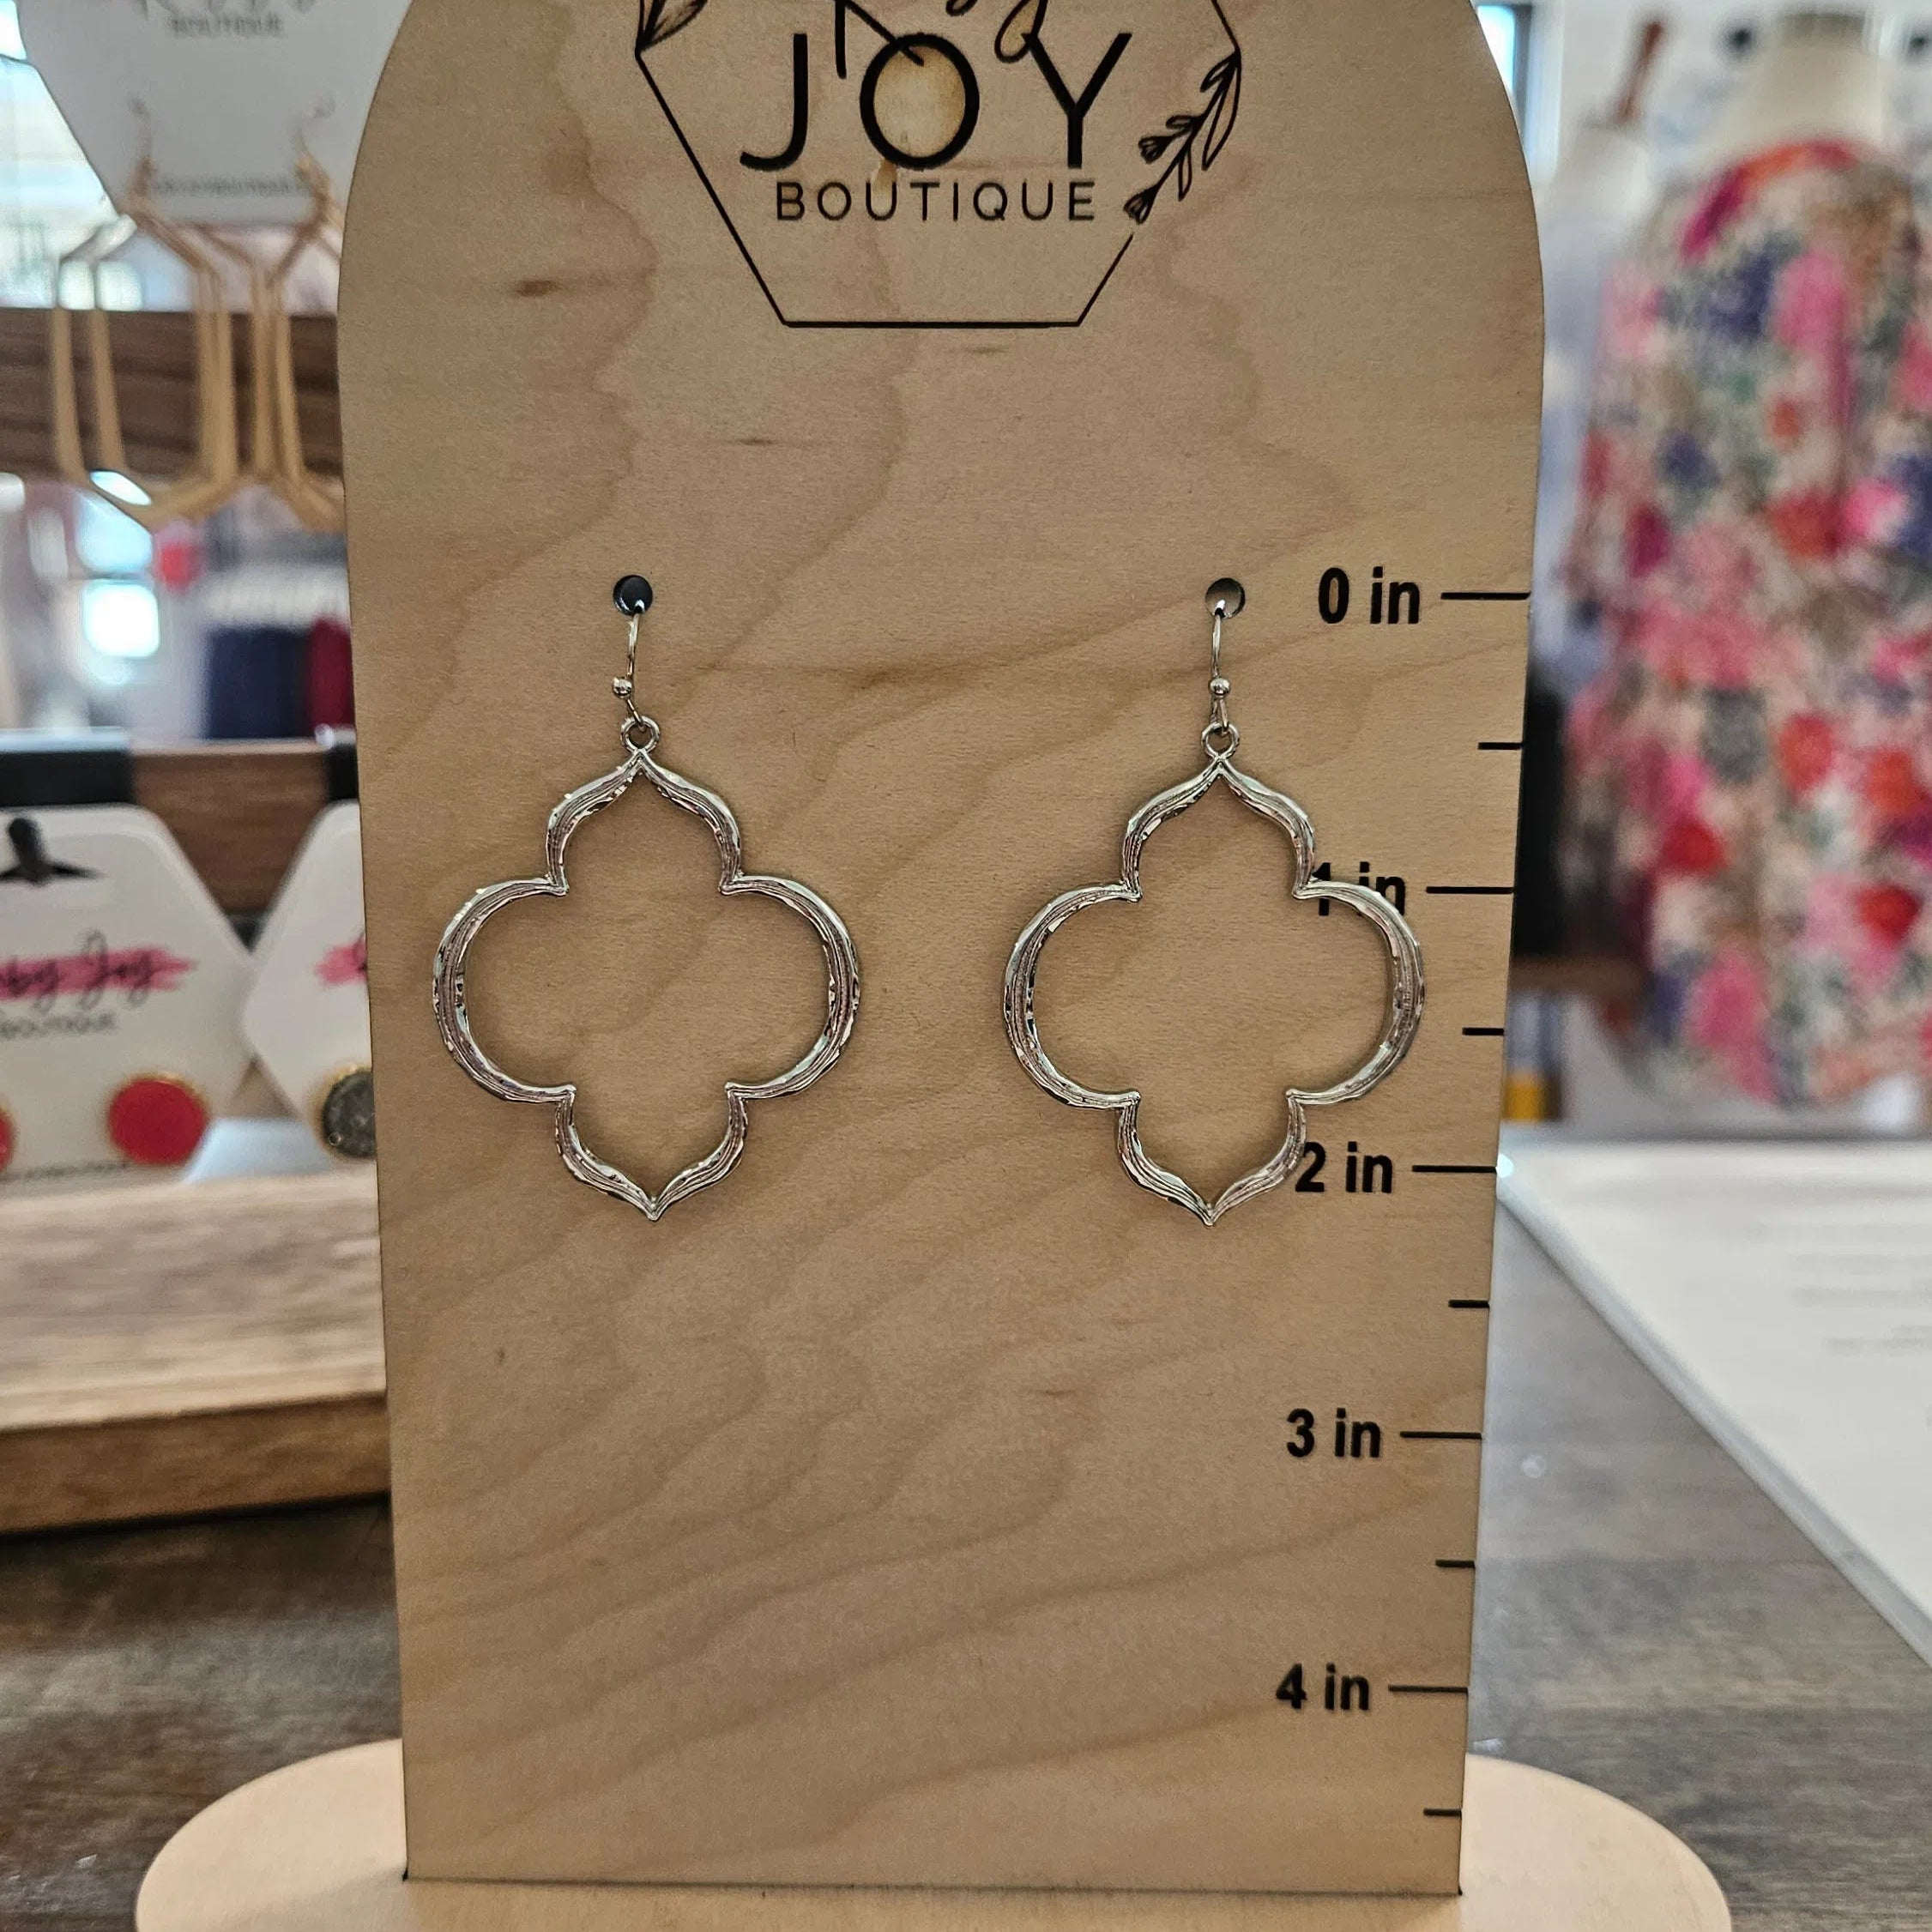 Shop Quatrefoil Earrings-Earrings at Ruby Joy Boutique, a Women's Clothing Store in Pickerington, Ohio